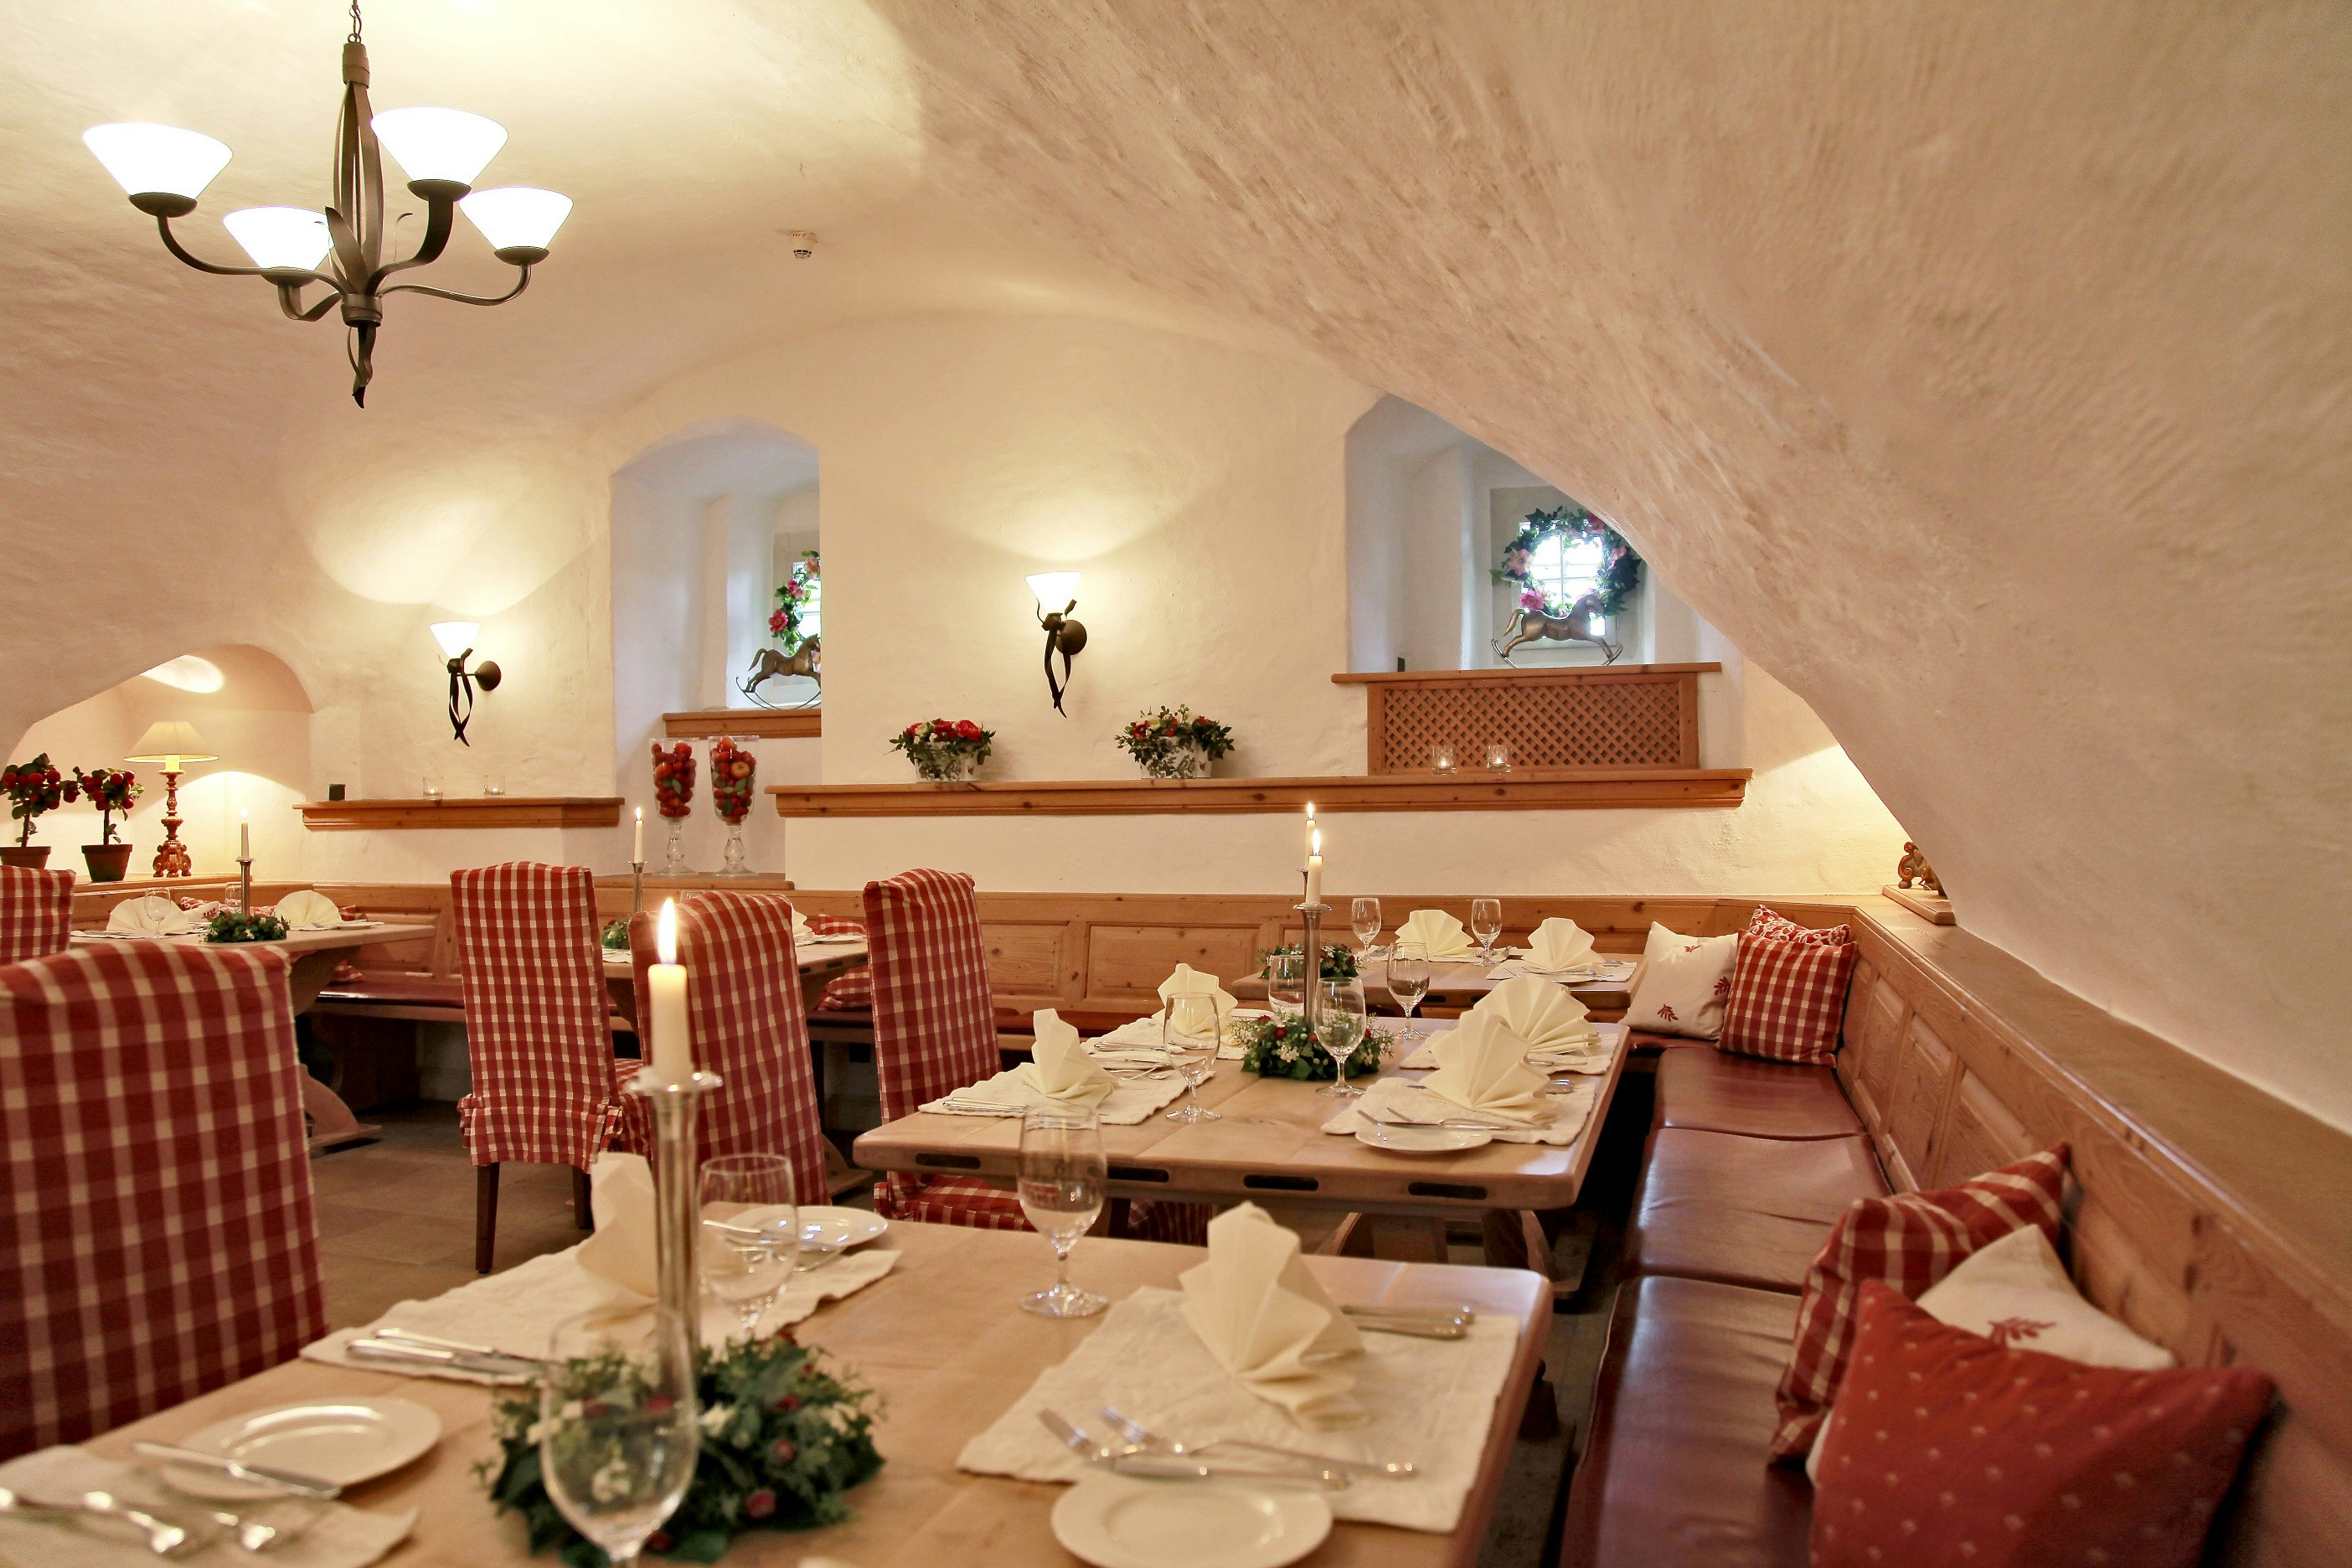 Menu in our restaurant "Schlosskeller"